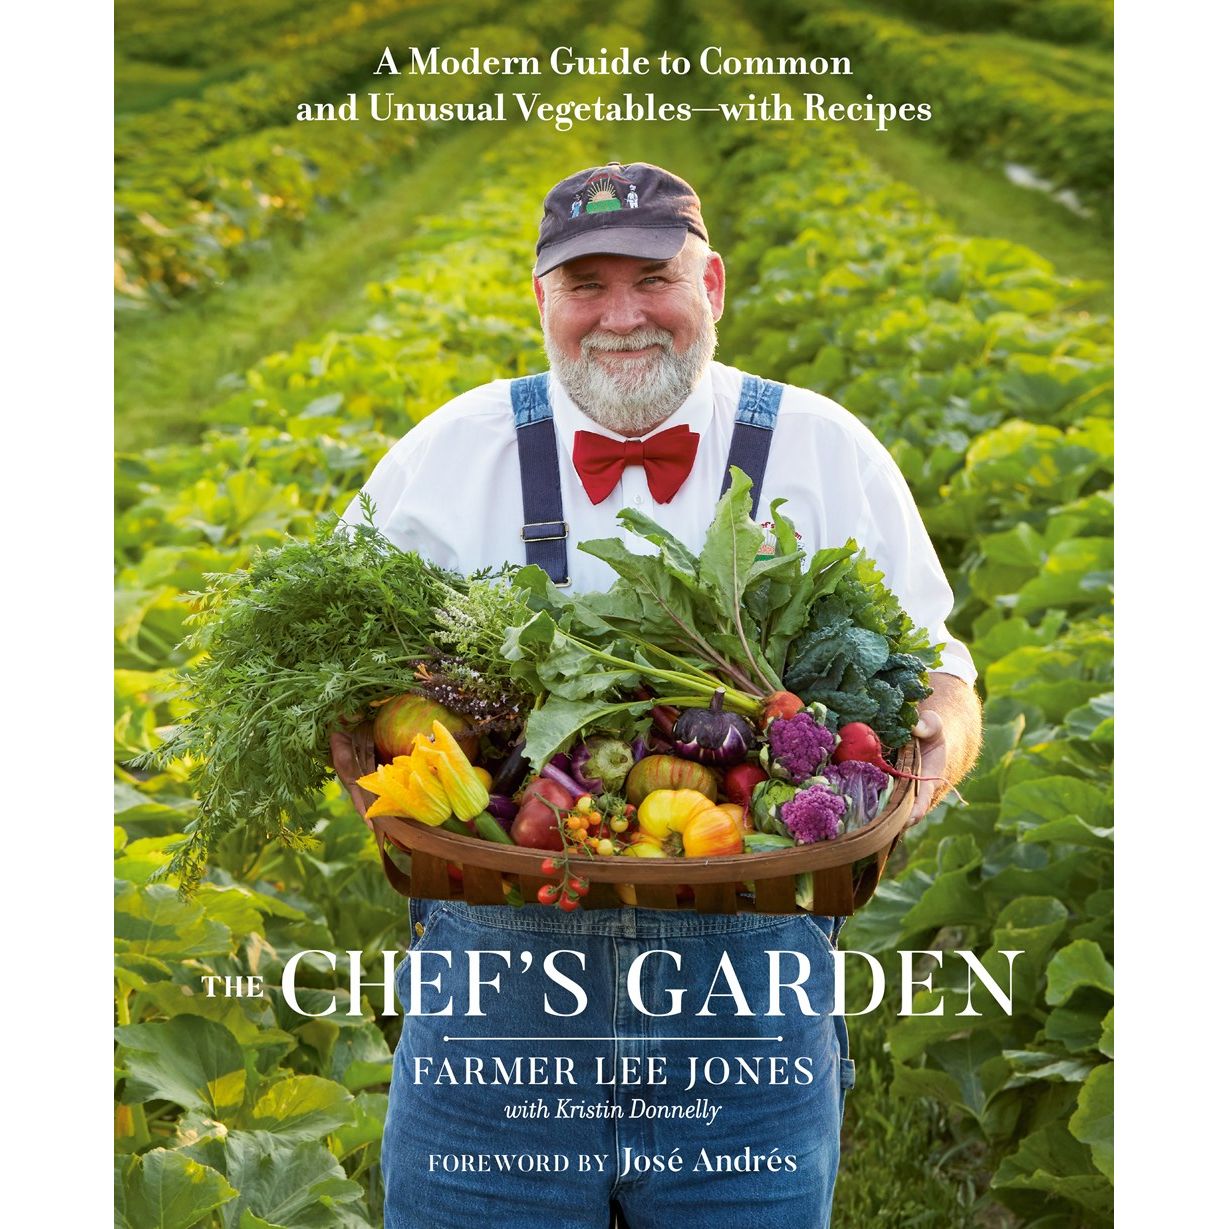 The Chef's Garden (Farmer Lee Jones)